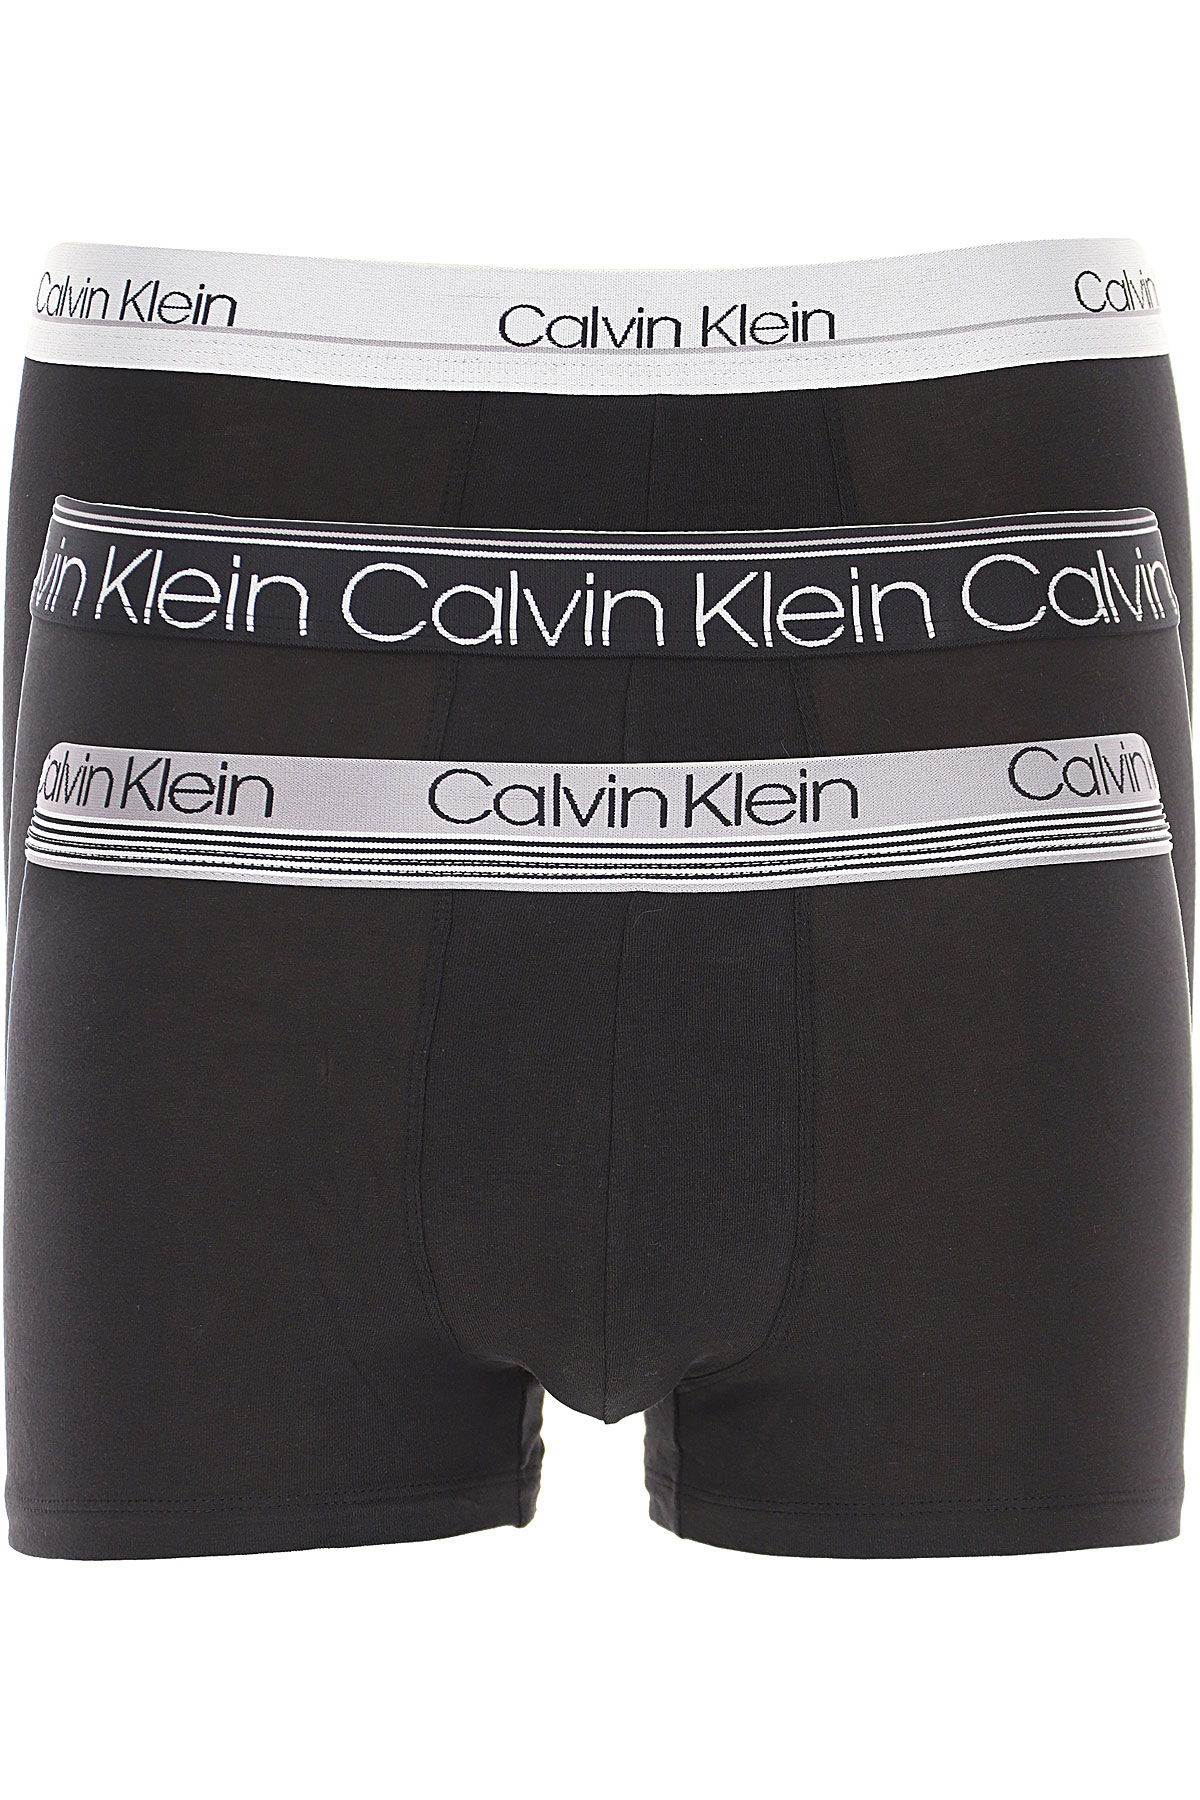 Mens Underwear Calvin Klein, Style code: nb2336at6b--